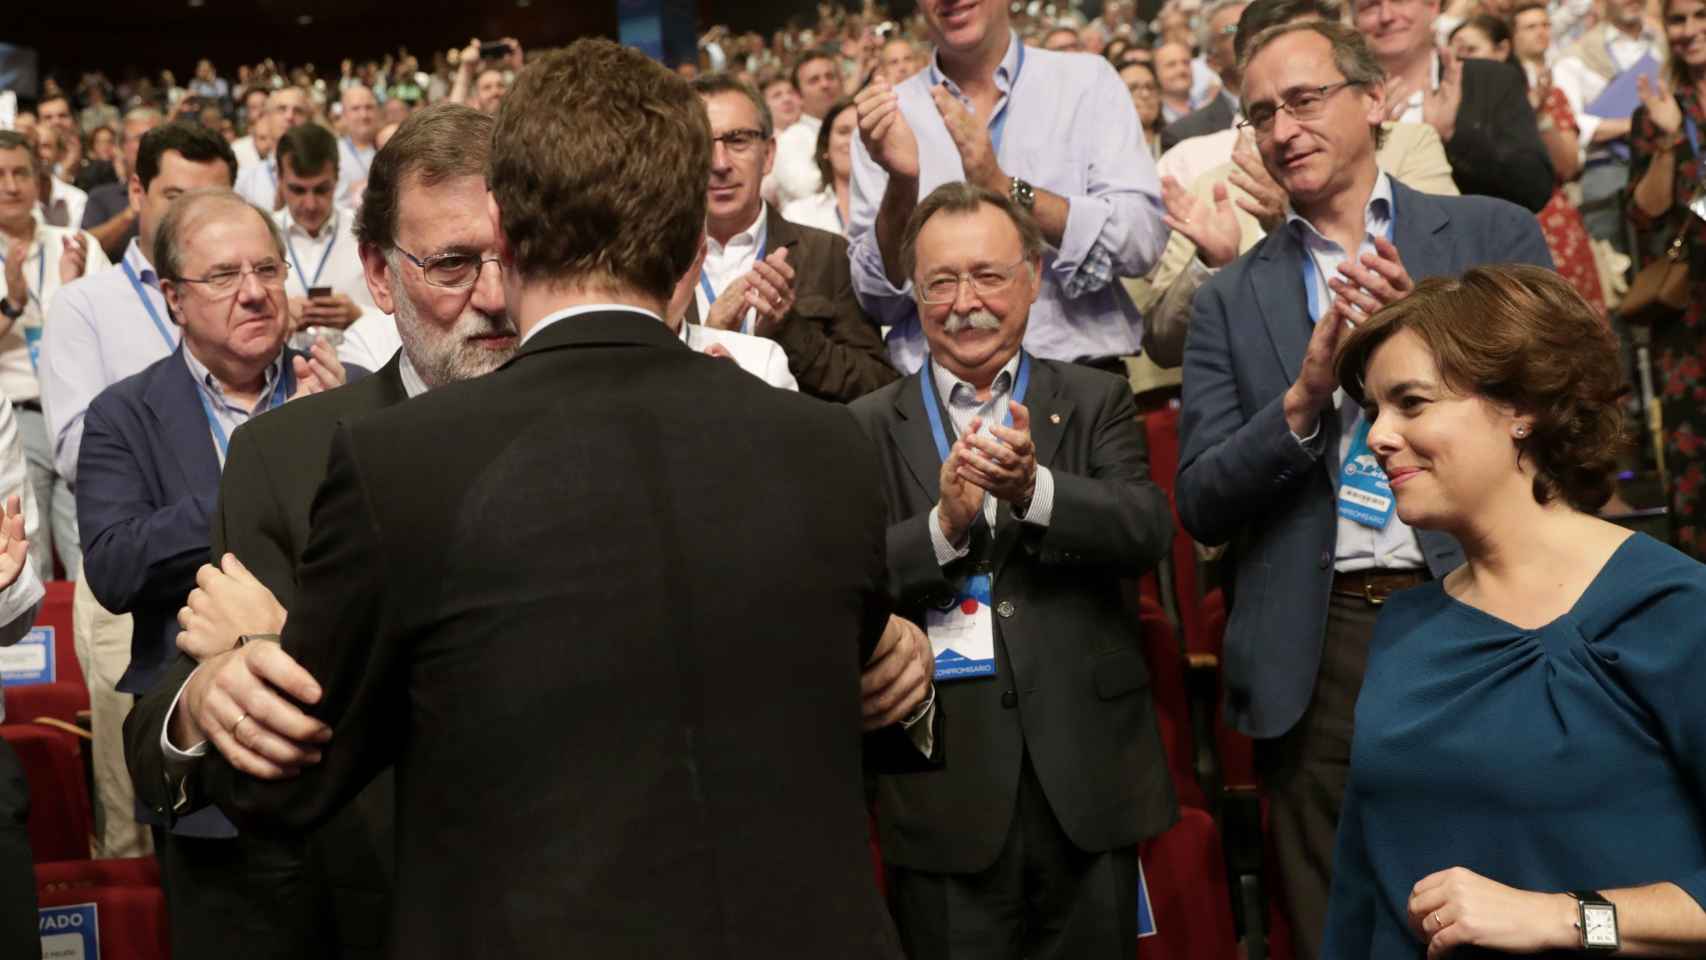 Rajoy, circunspecto, saluda a Casado tras su victoria en el Congreso del PP.